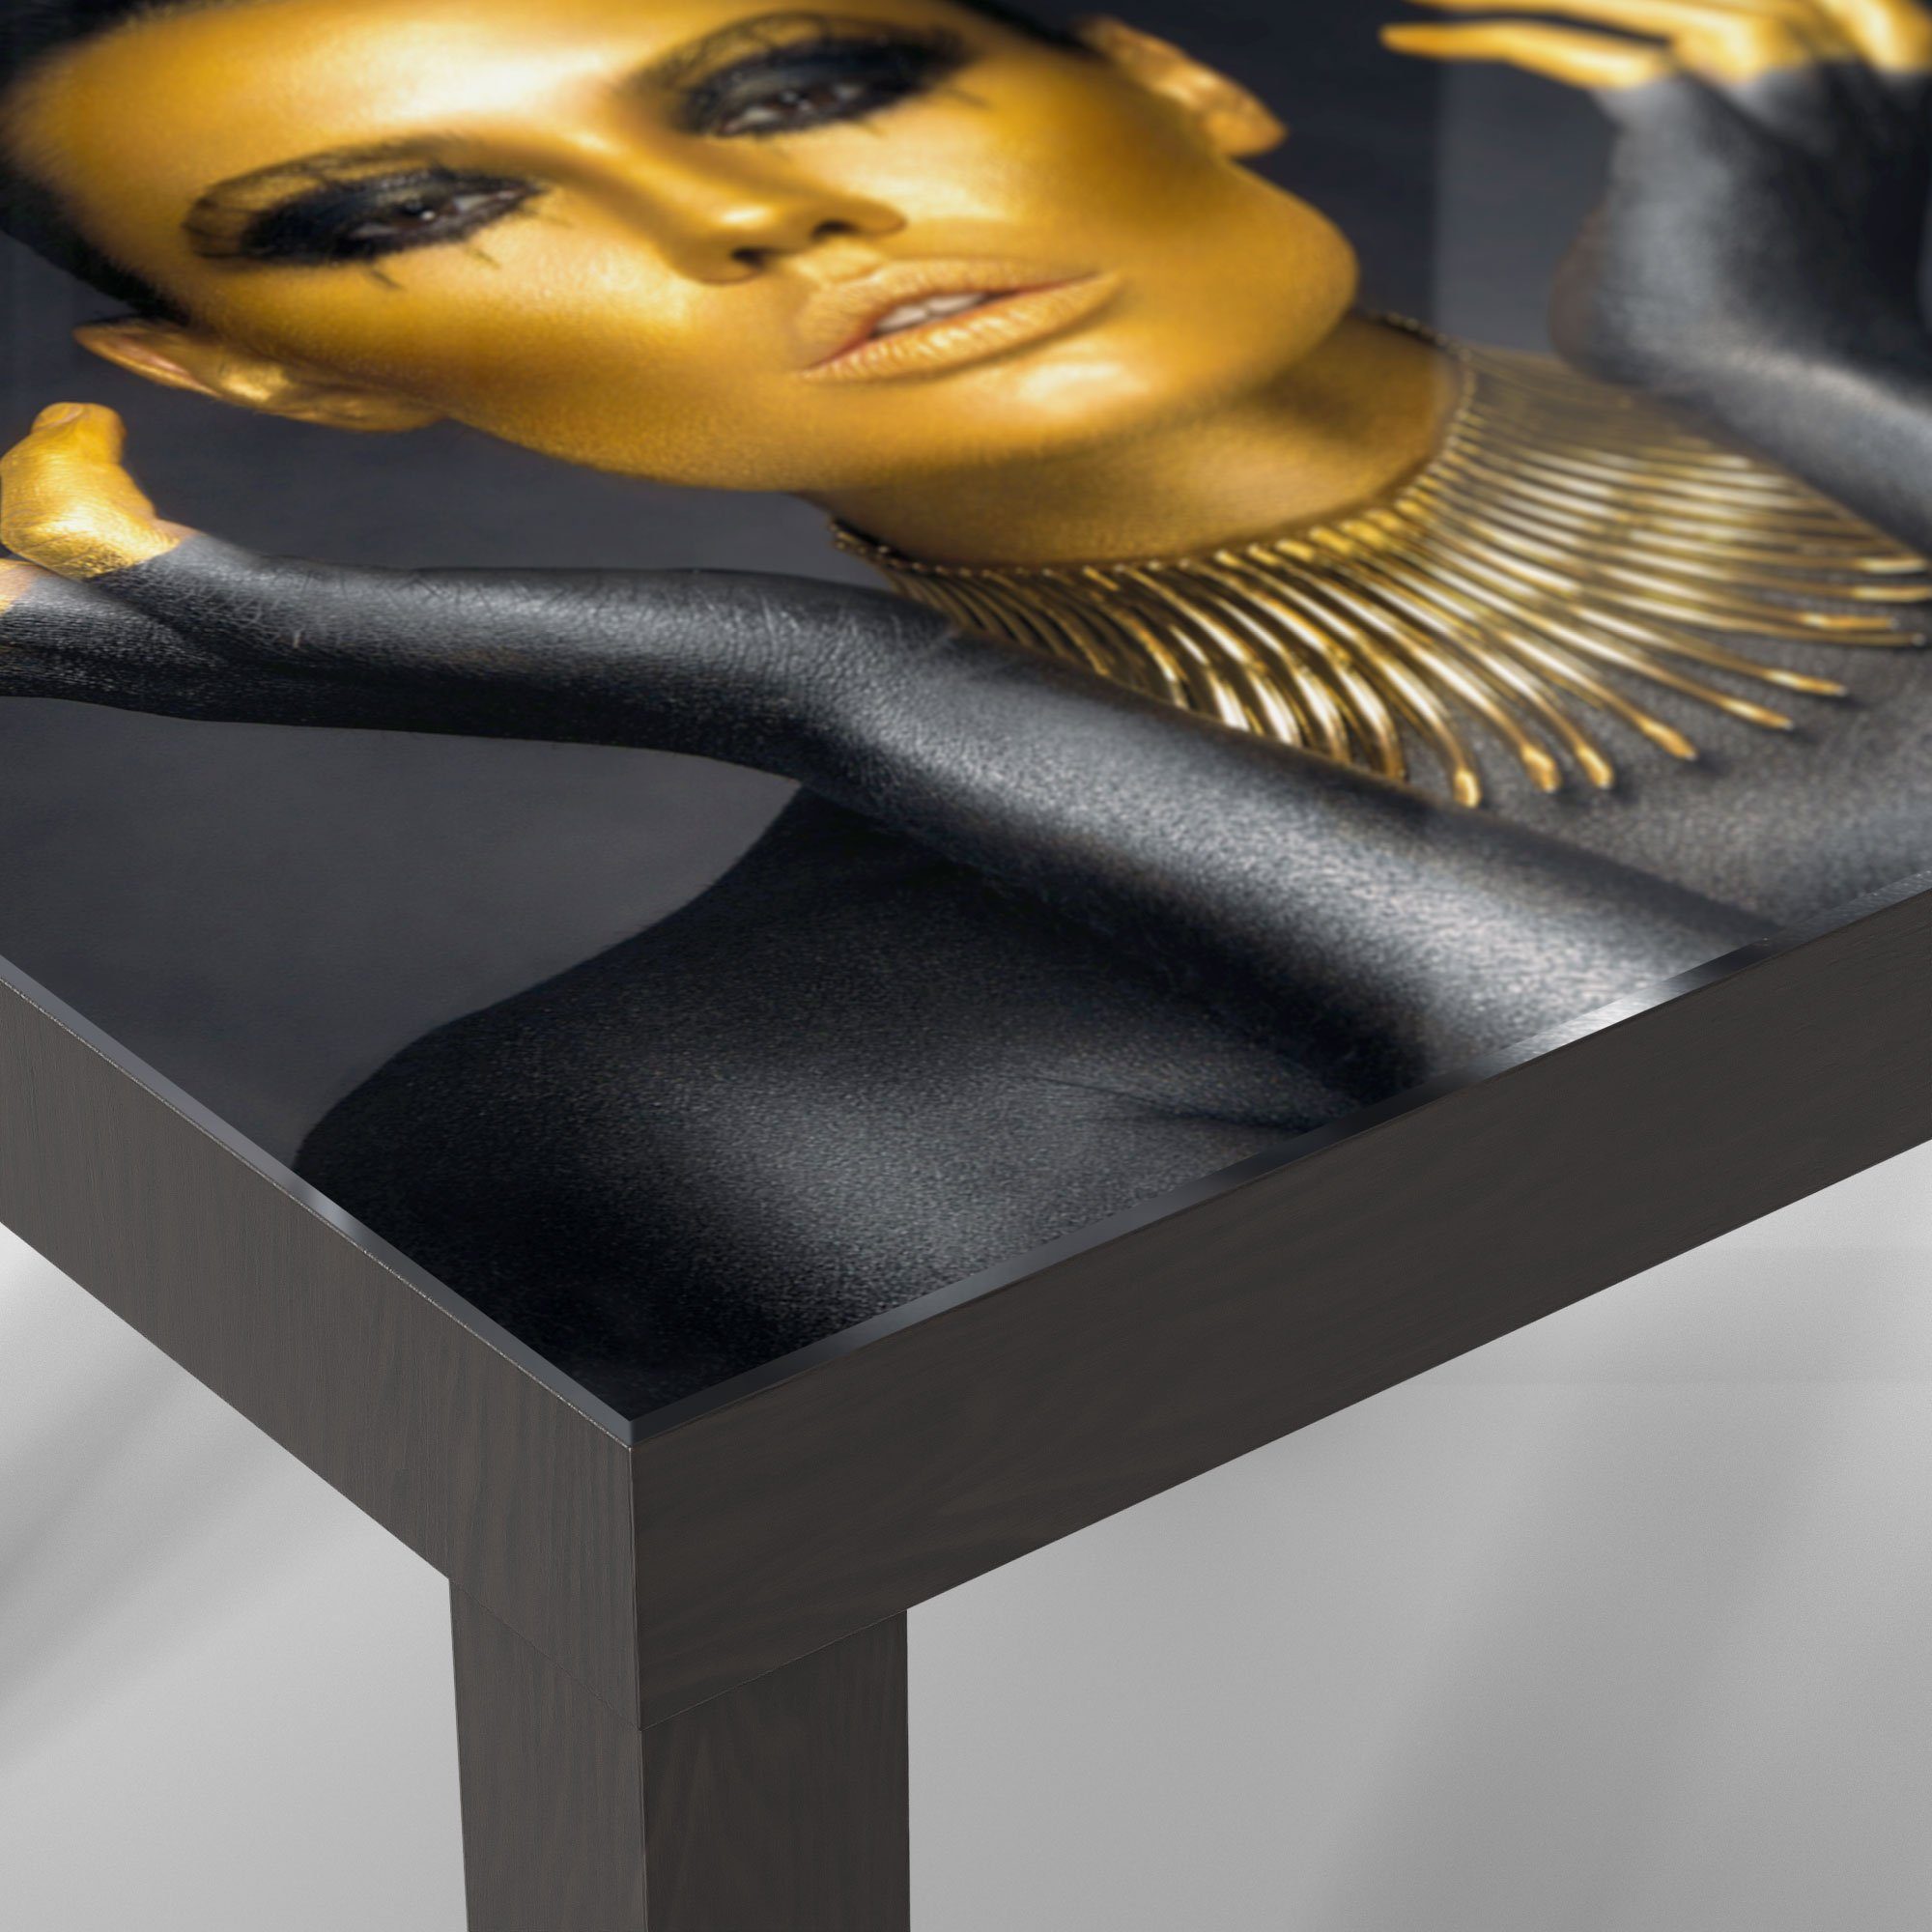 'Glamouröses Couchtisch Glas Modell', Schwarz Glastisch DEQORI Beistelltisch modern